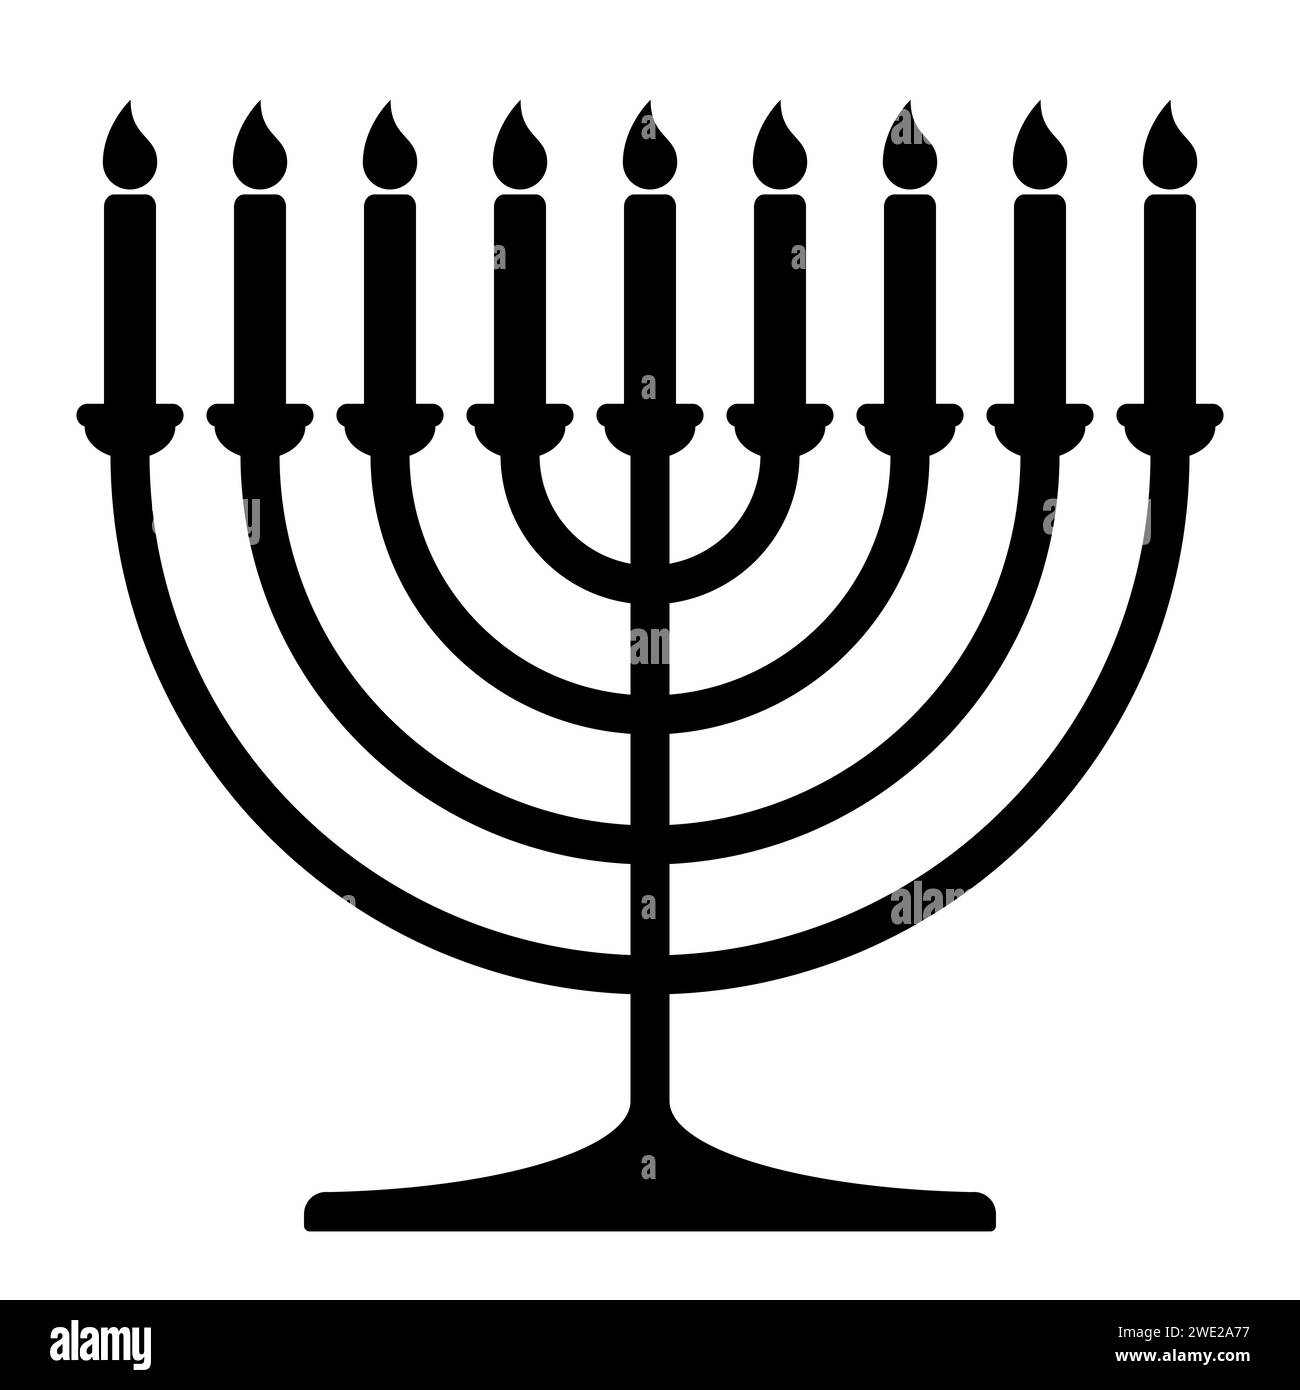 Hanukkah Menora, schwarz-weiße Vektor-Silhouette Illustration von Hanukkiah neun-verzweigten Kerzenleuchtern mit Kerzen Stock Vektor